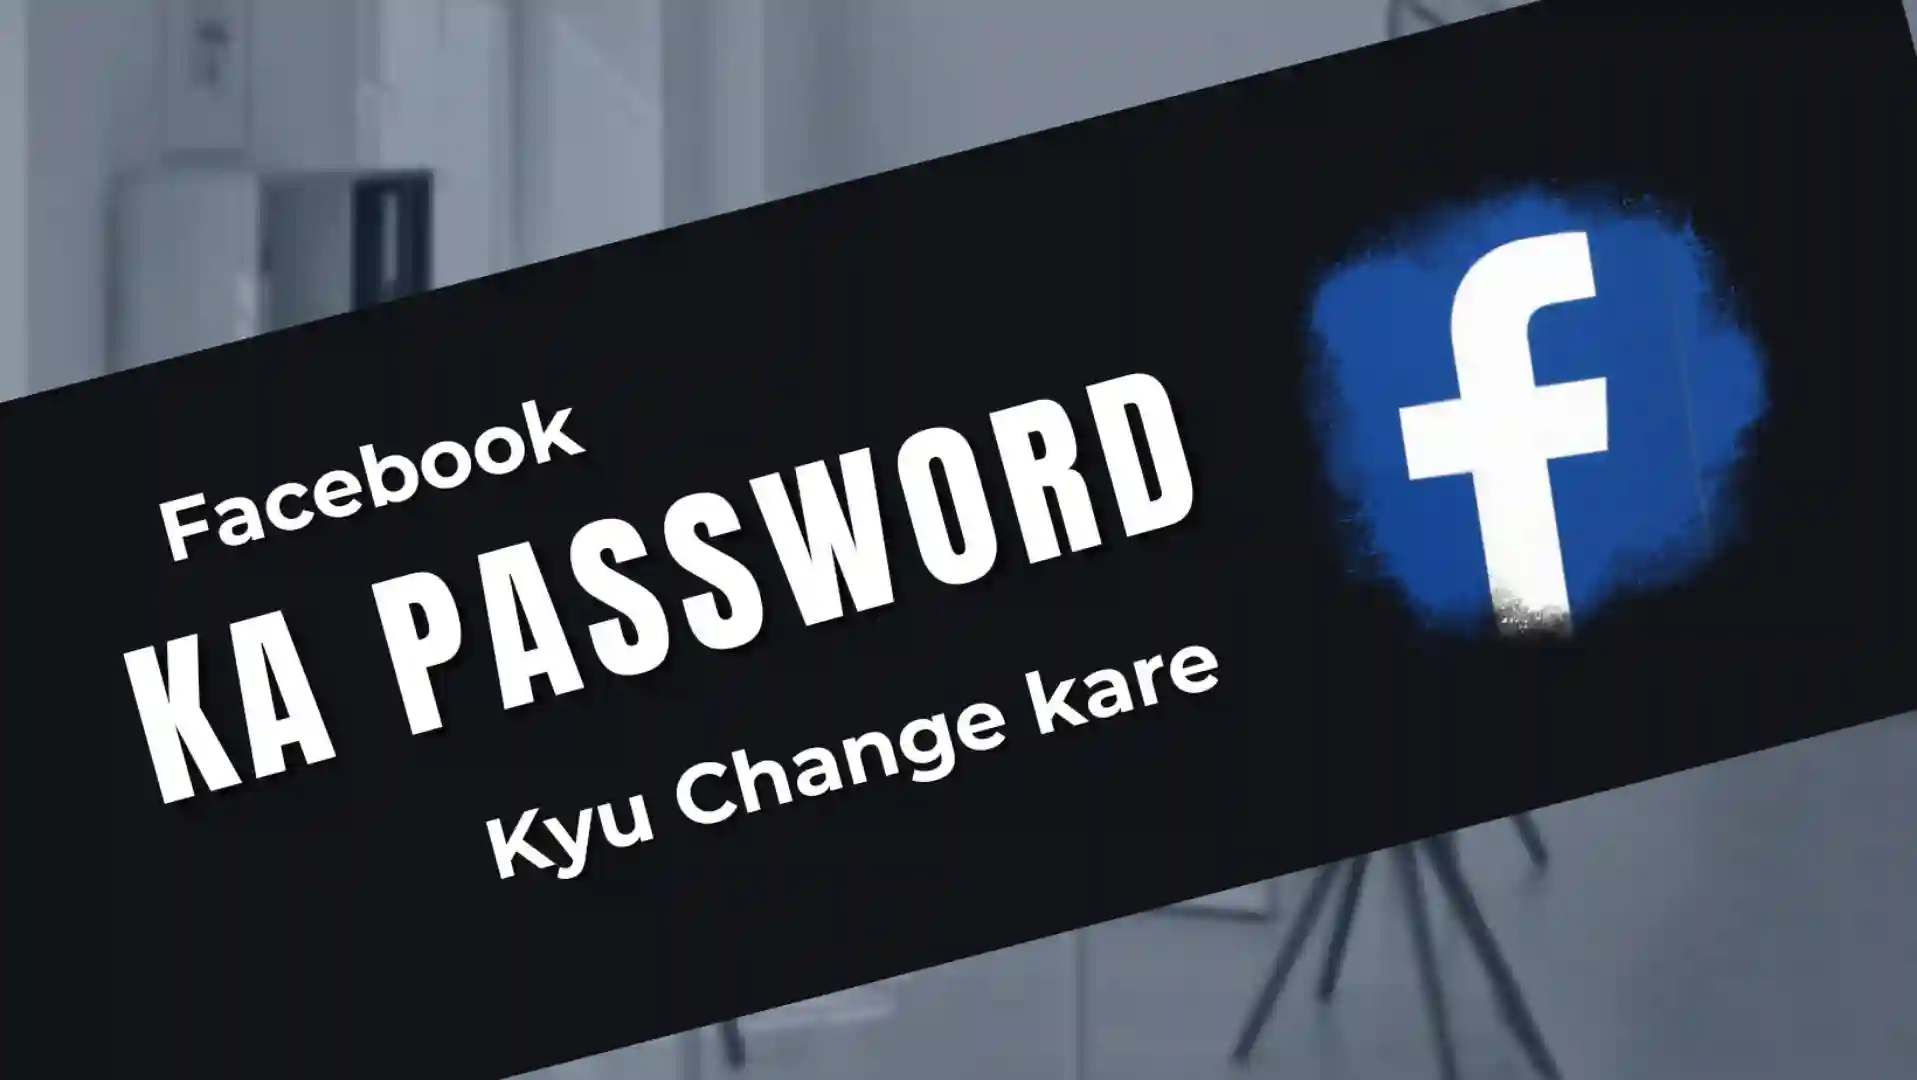 Facebook-ka-password-kaise-change-kare